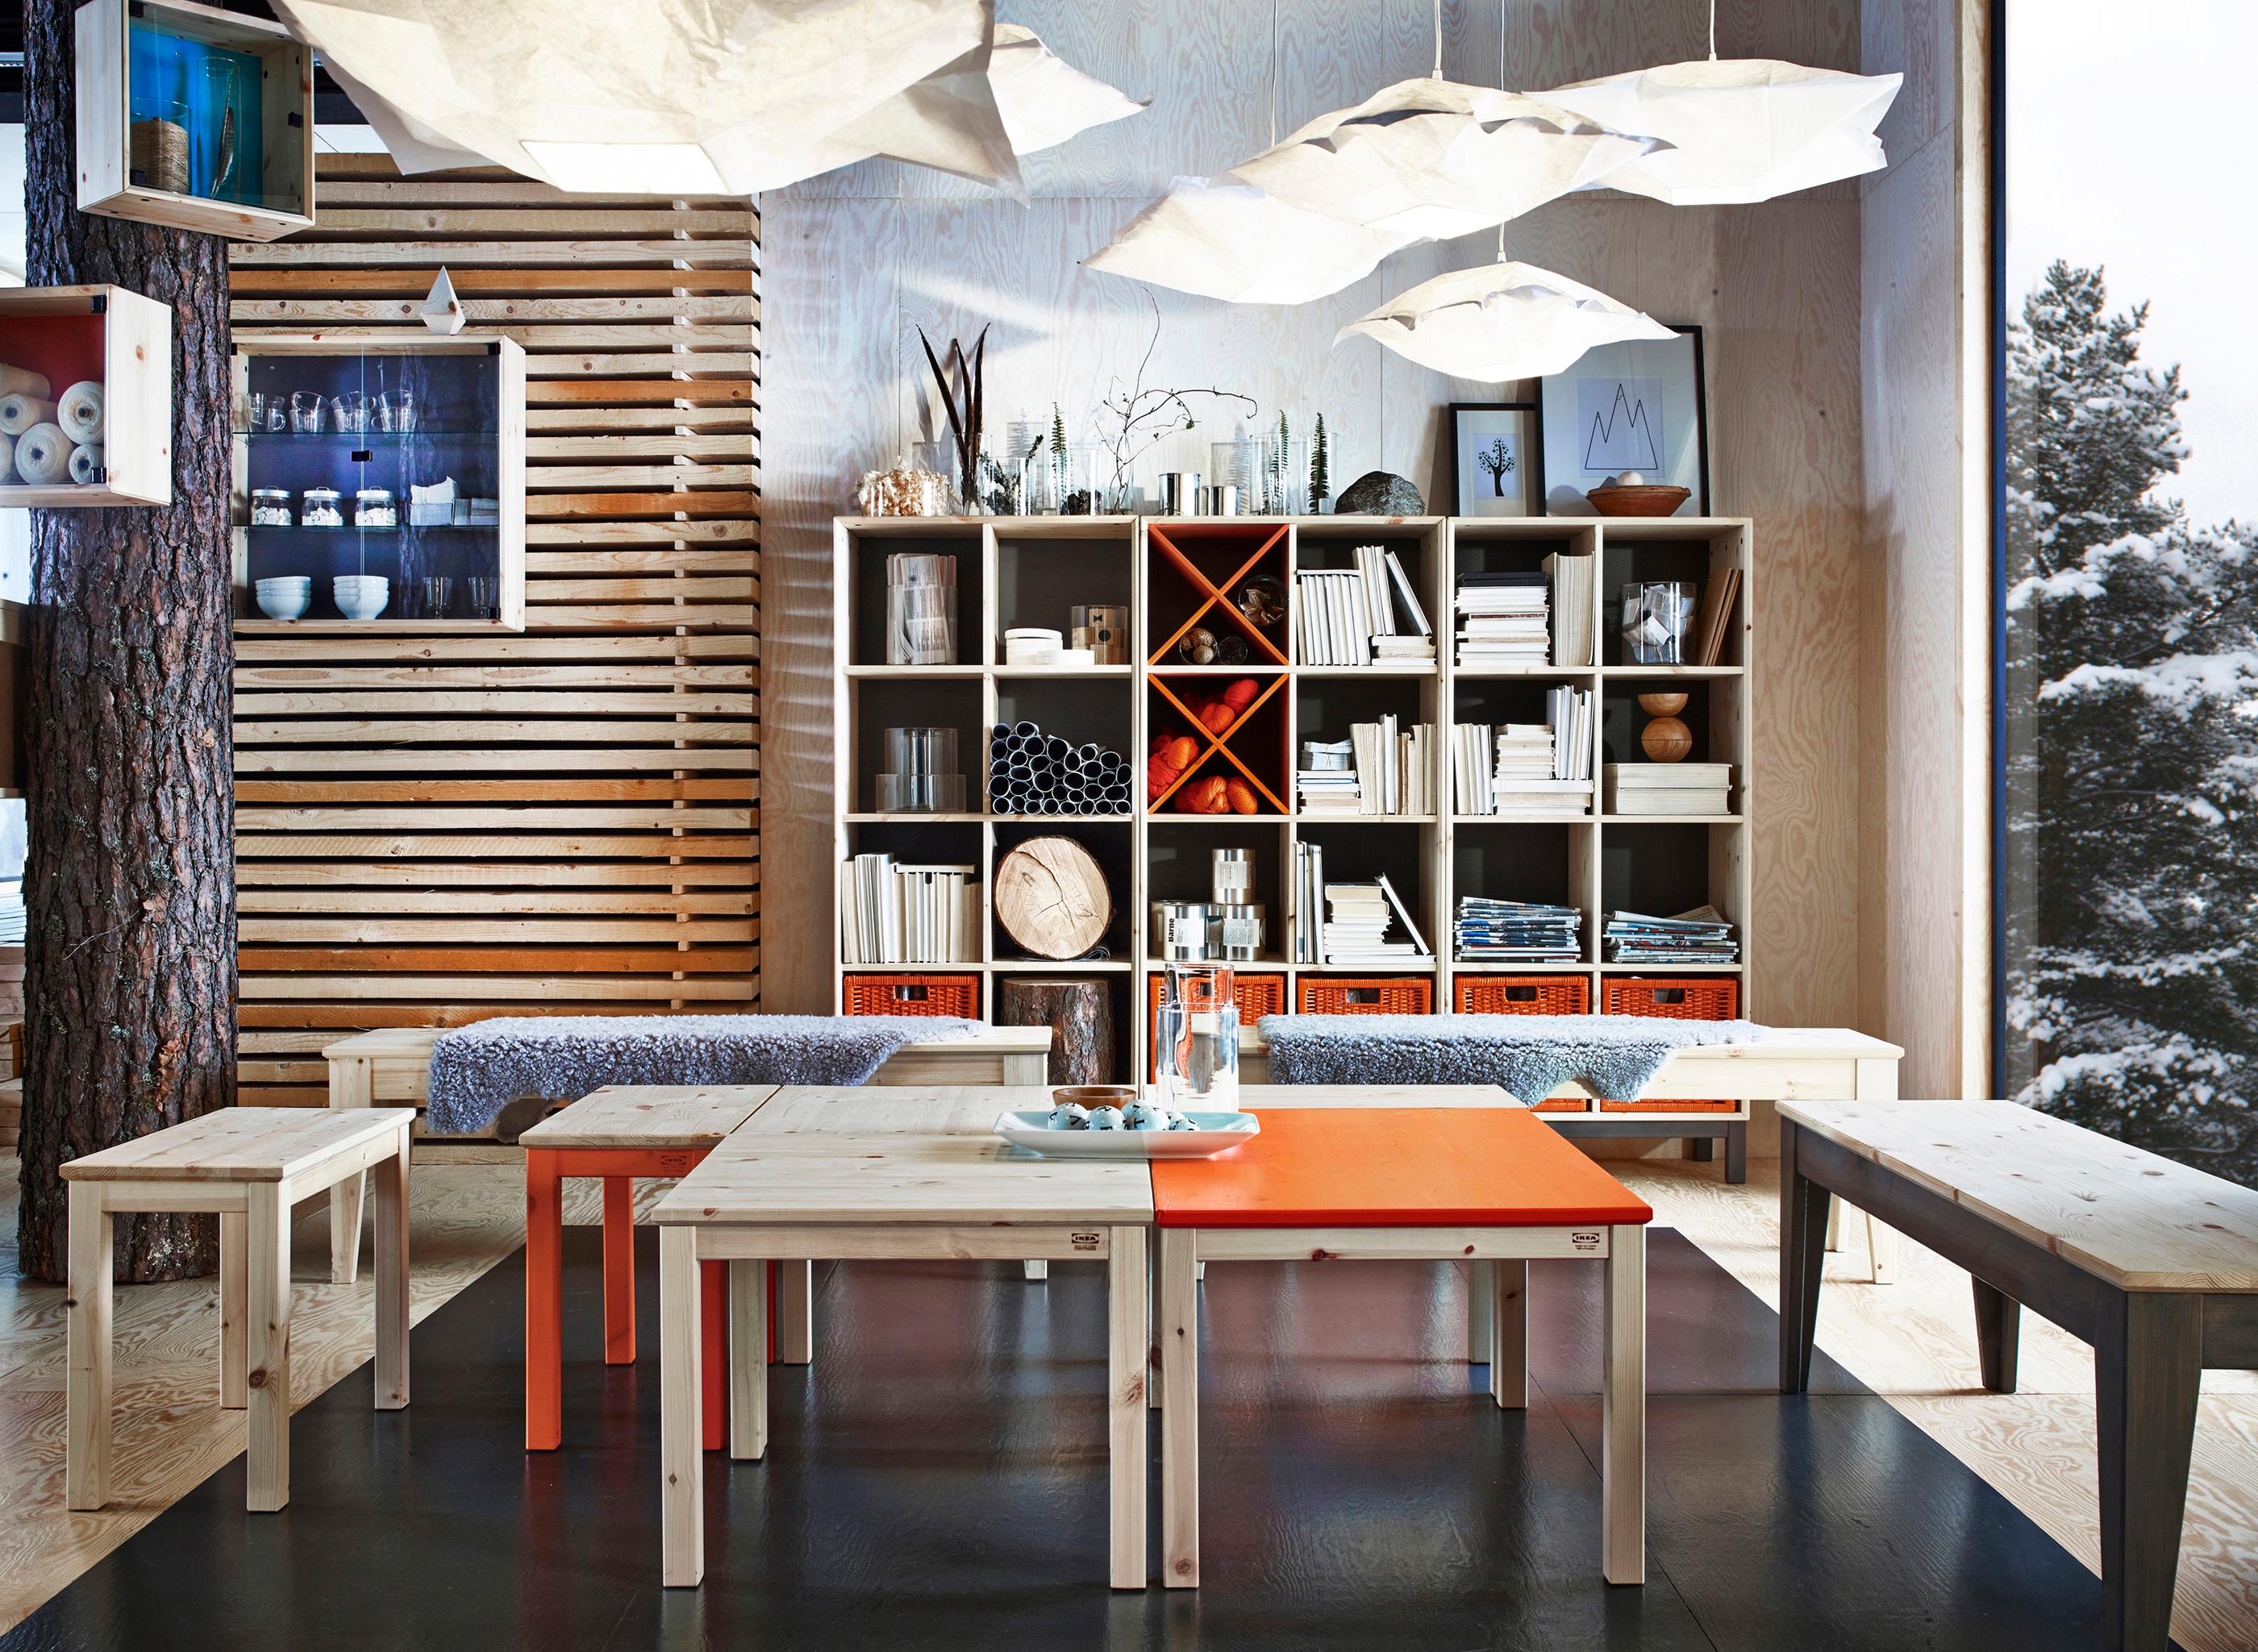 Orangefarbene Möbel und quadratische Formen #schrank #holzbank #ikea #sitzbank #aufbewahrungsbox ©Inter IKEA Systems B.V.